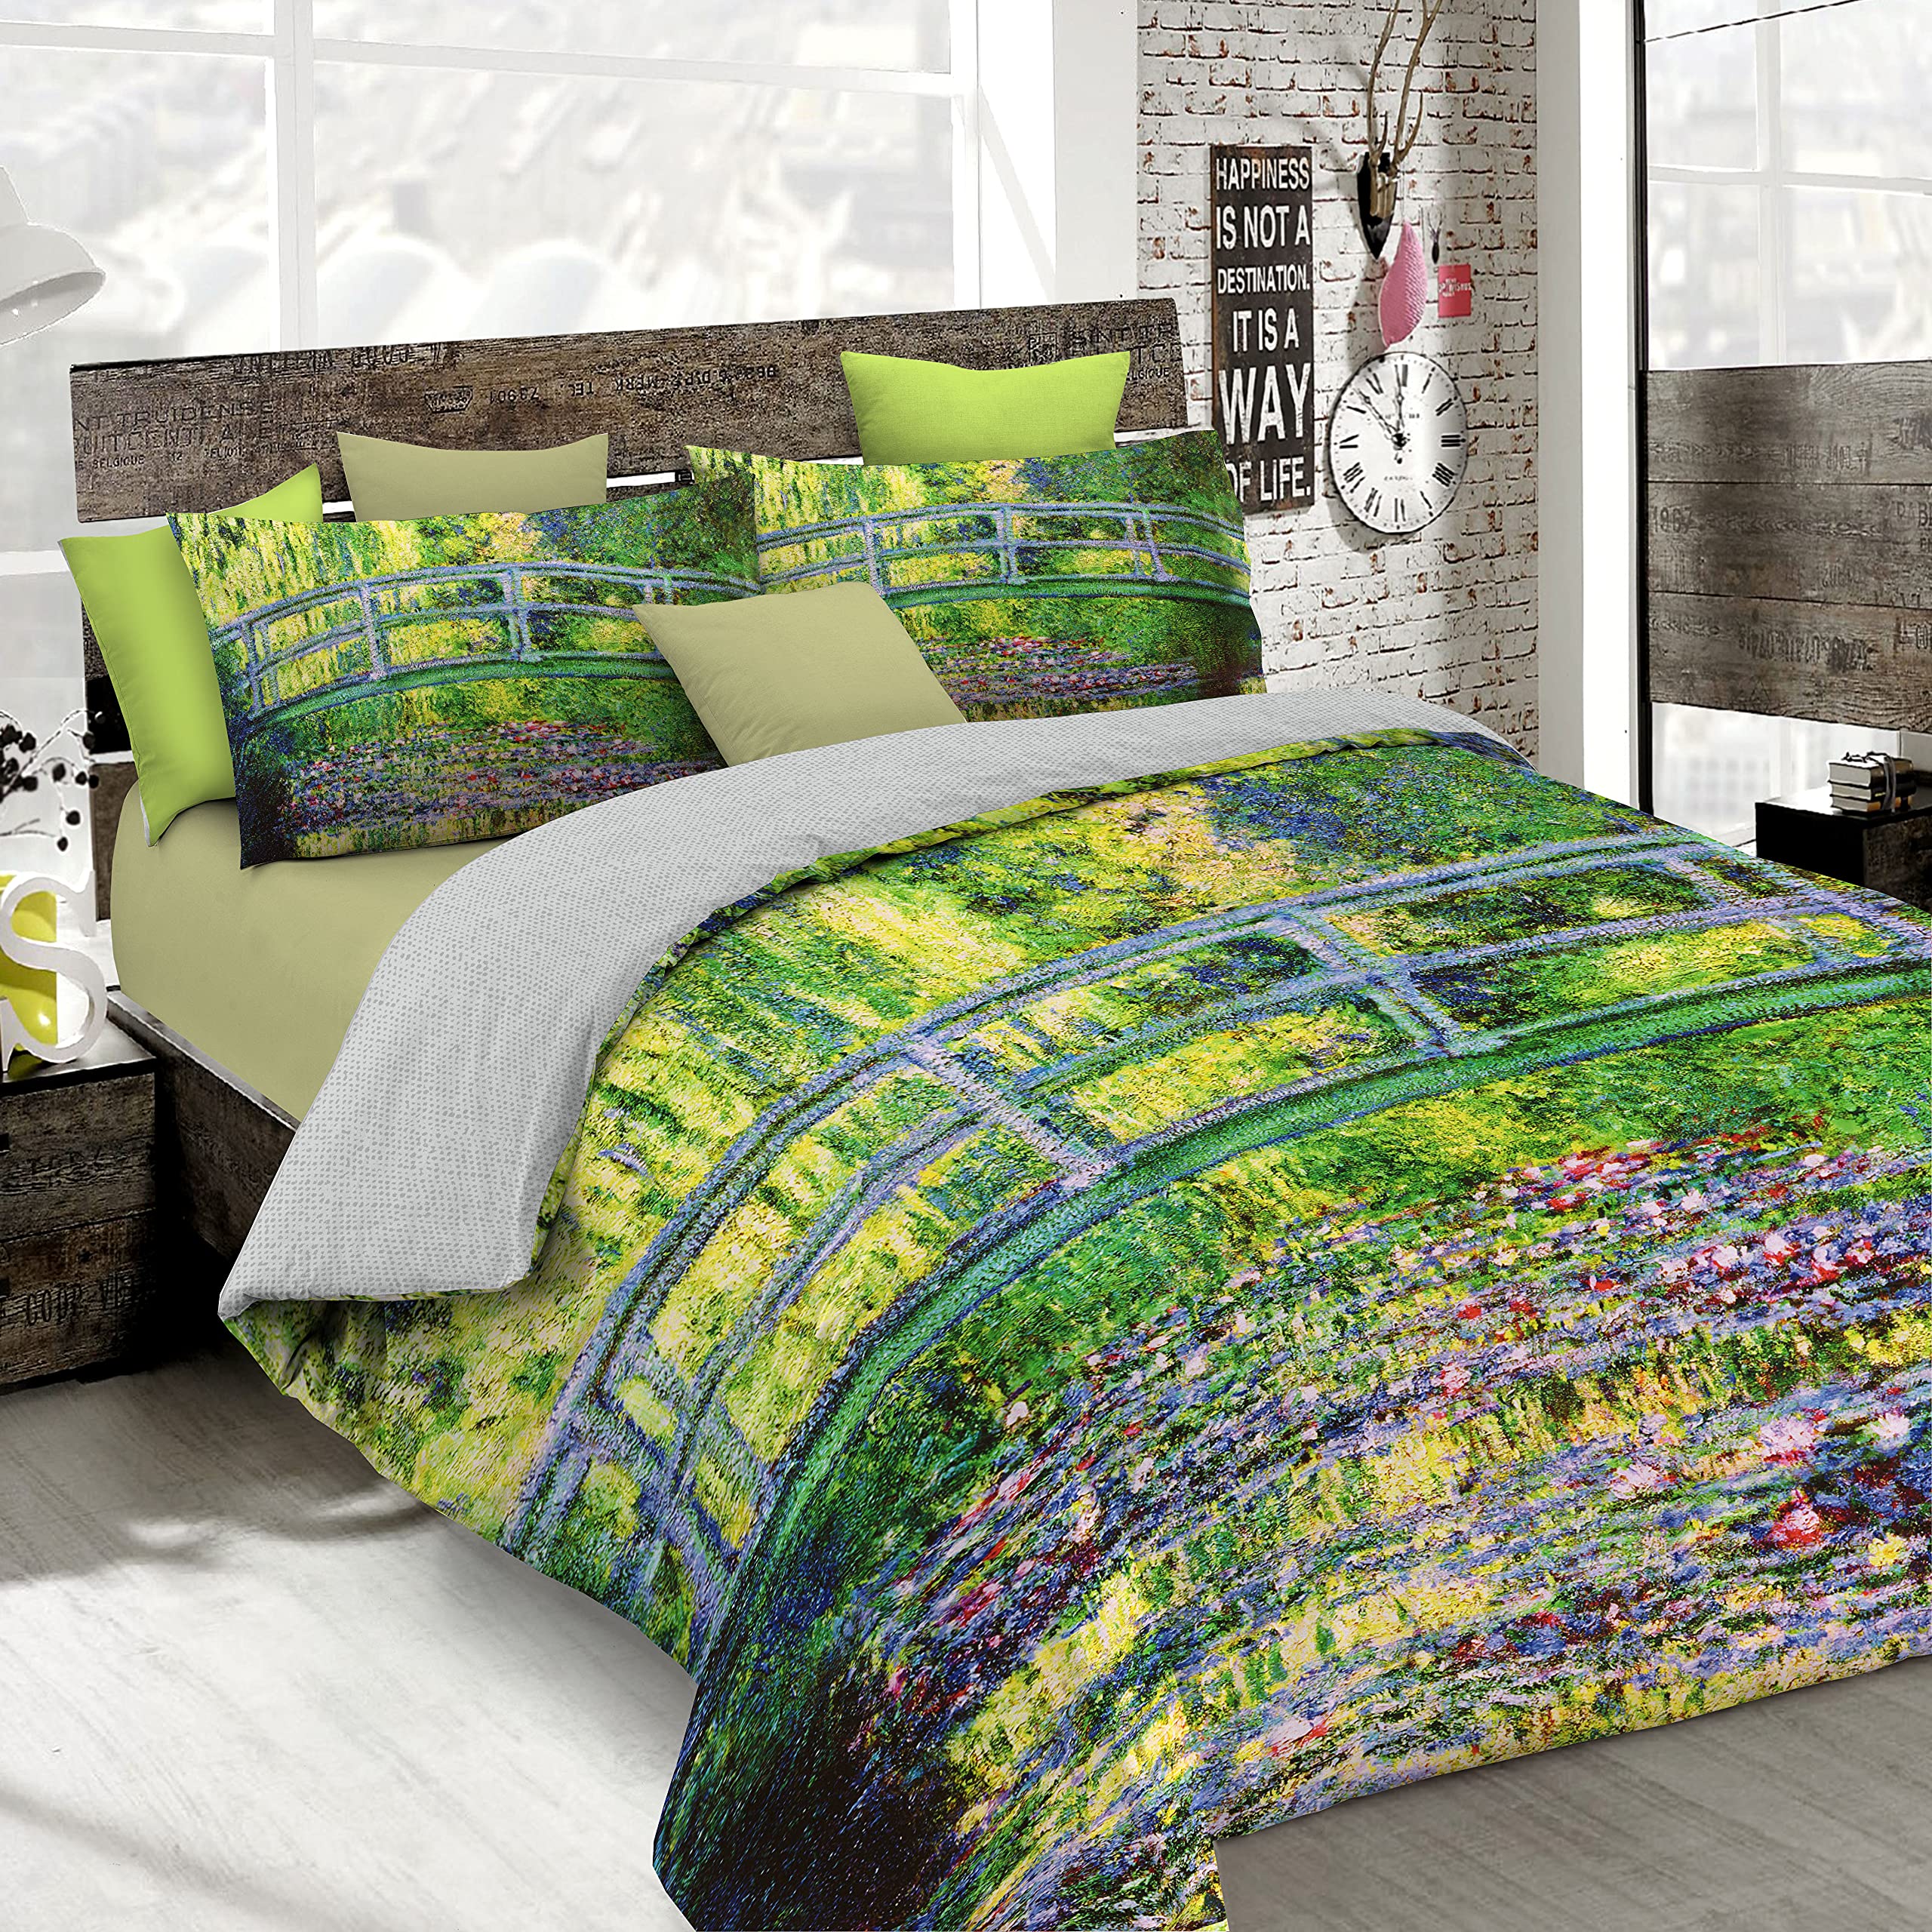 Italian Bed Linen Bettbezug, Doppelte, 100% Baumwolle, Multicolor SD53, DOPPEL